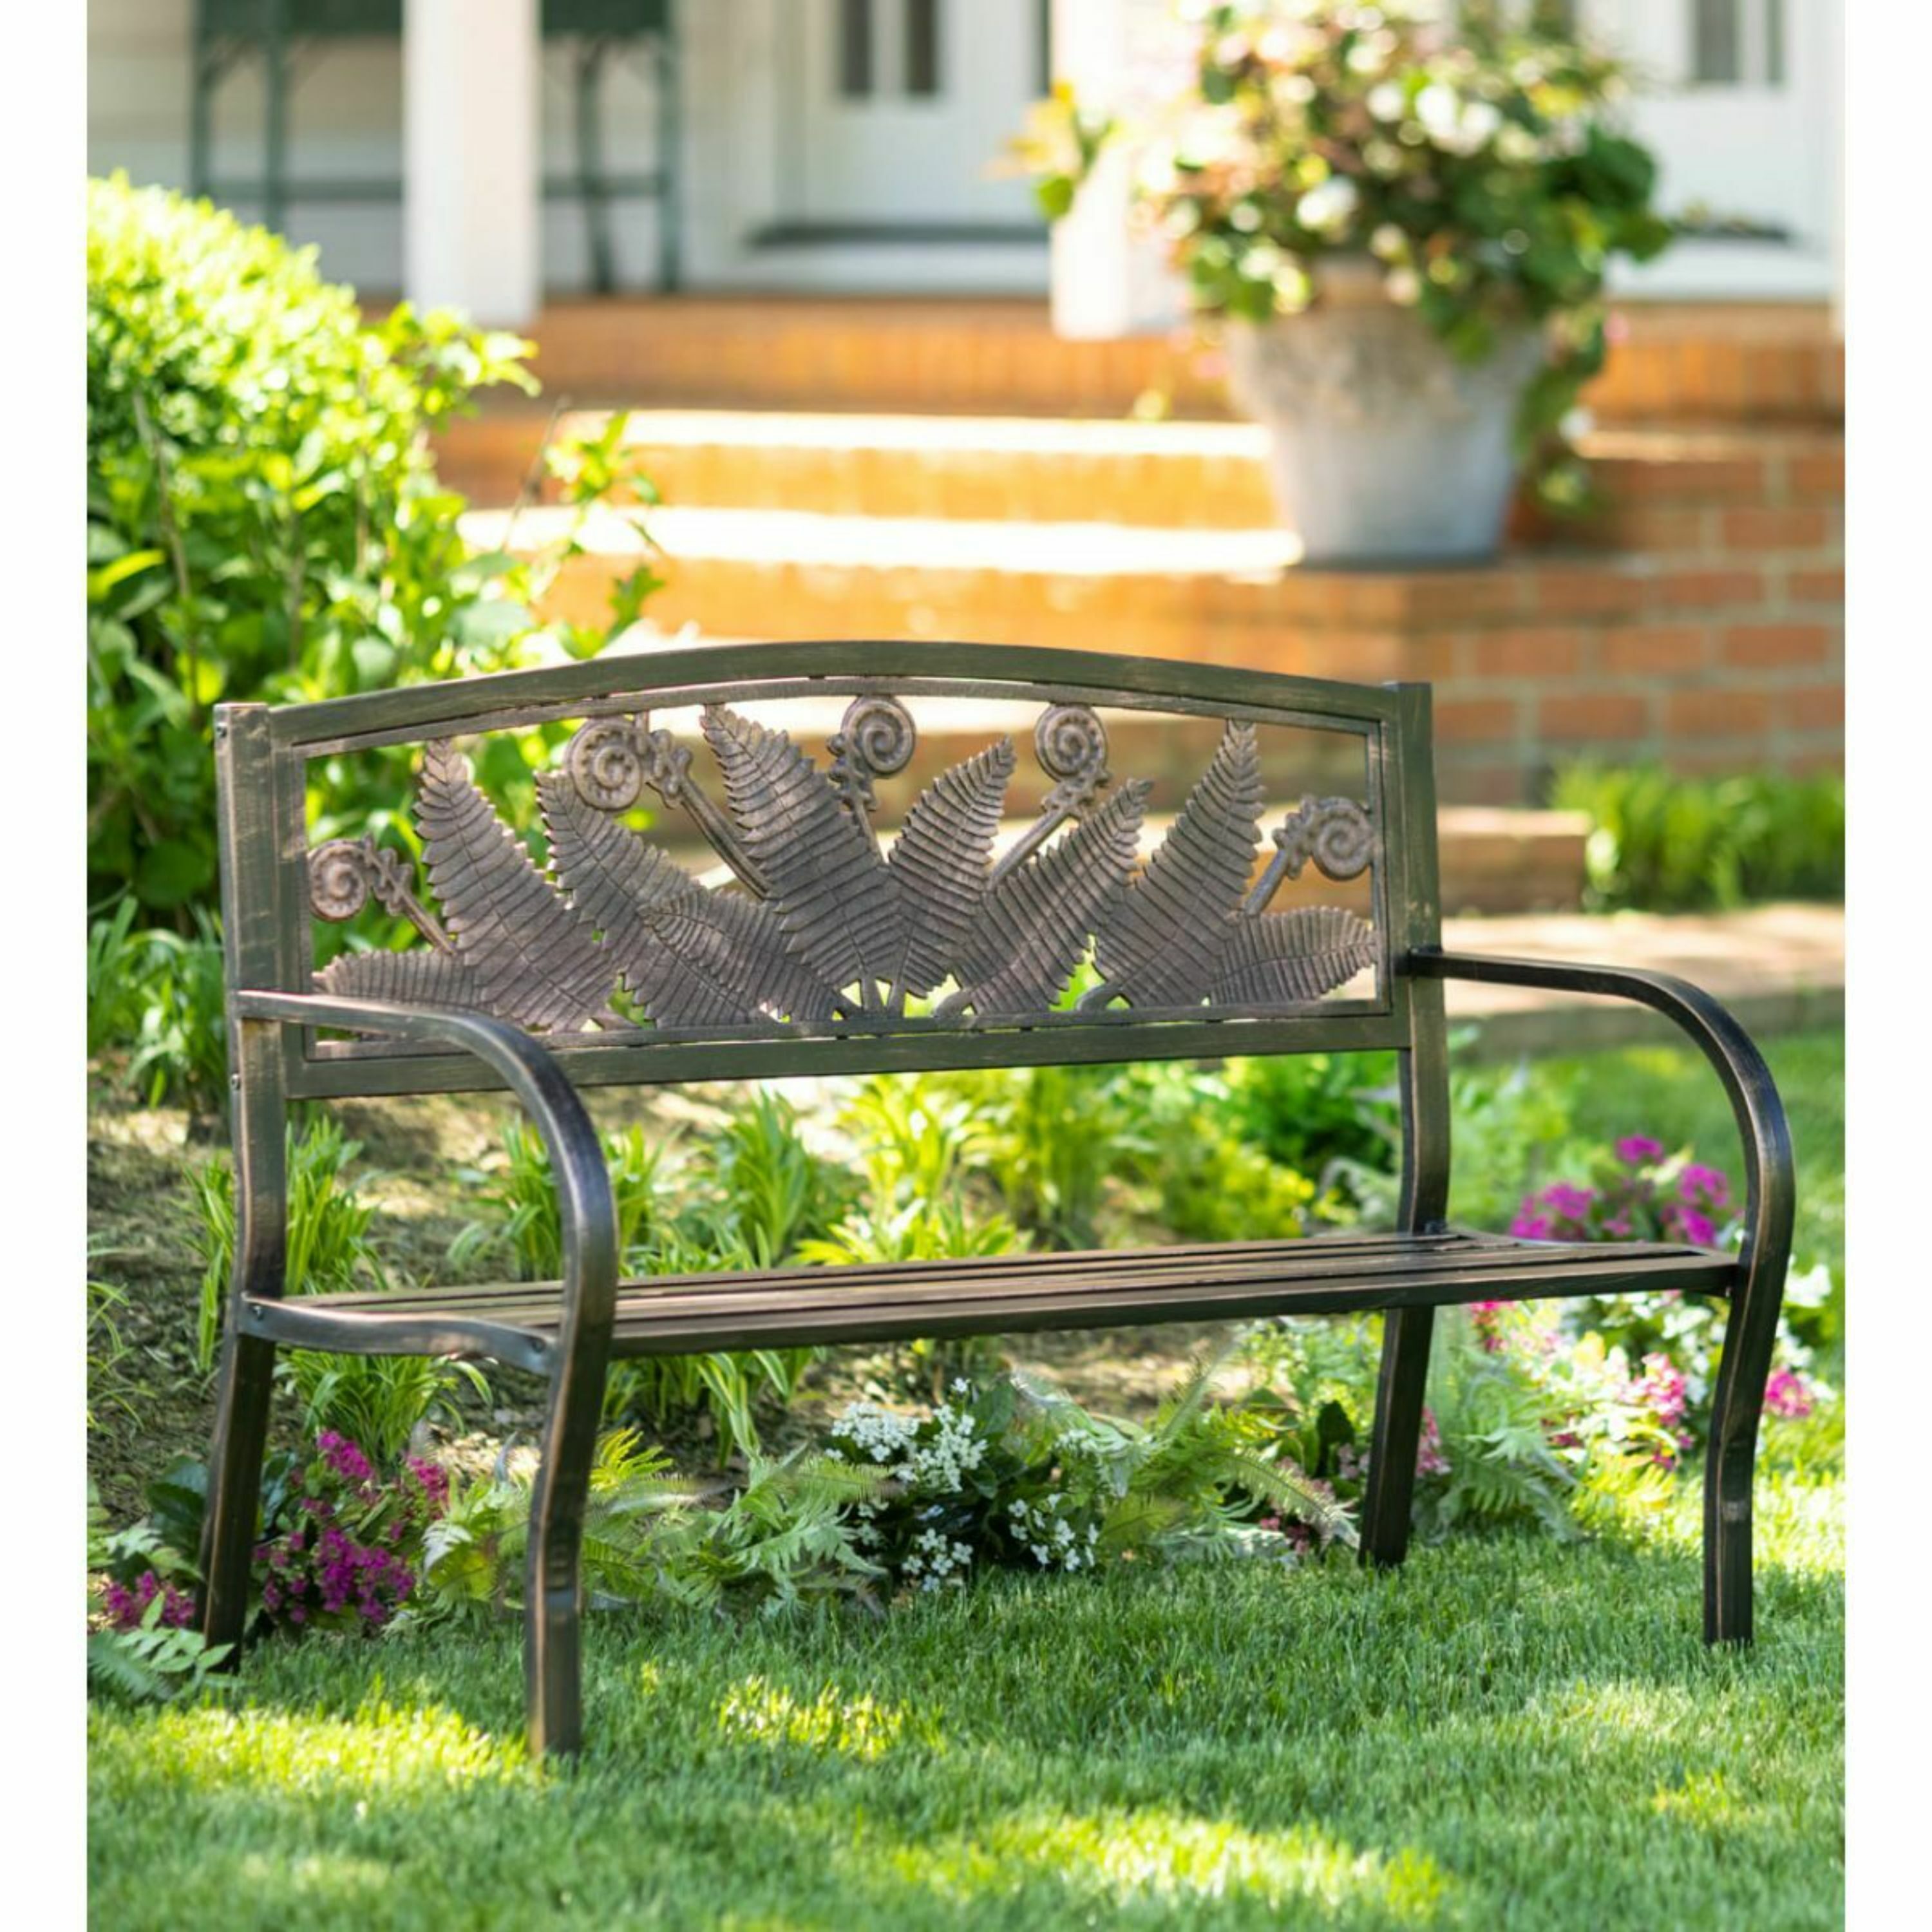 Evergreen 50-in W x 34-in H Bronze Steel Garden Bench in the Patio ...